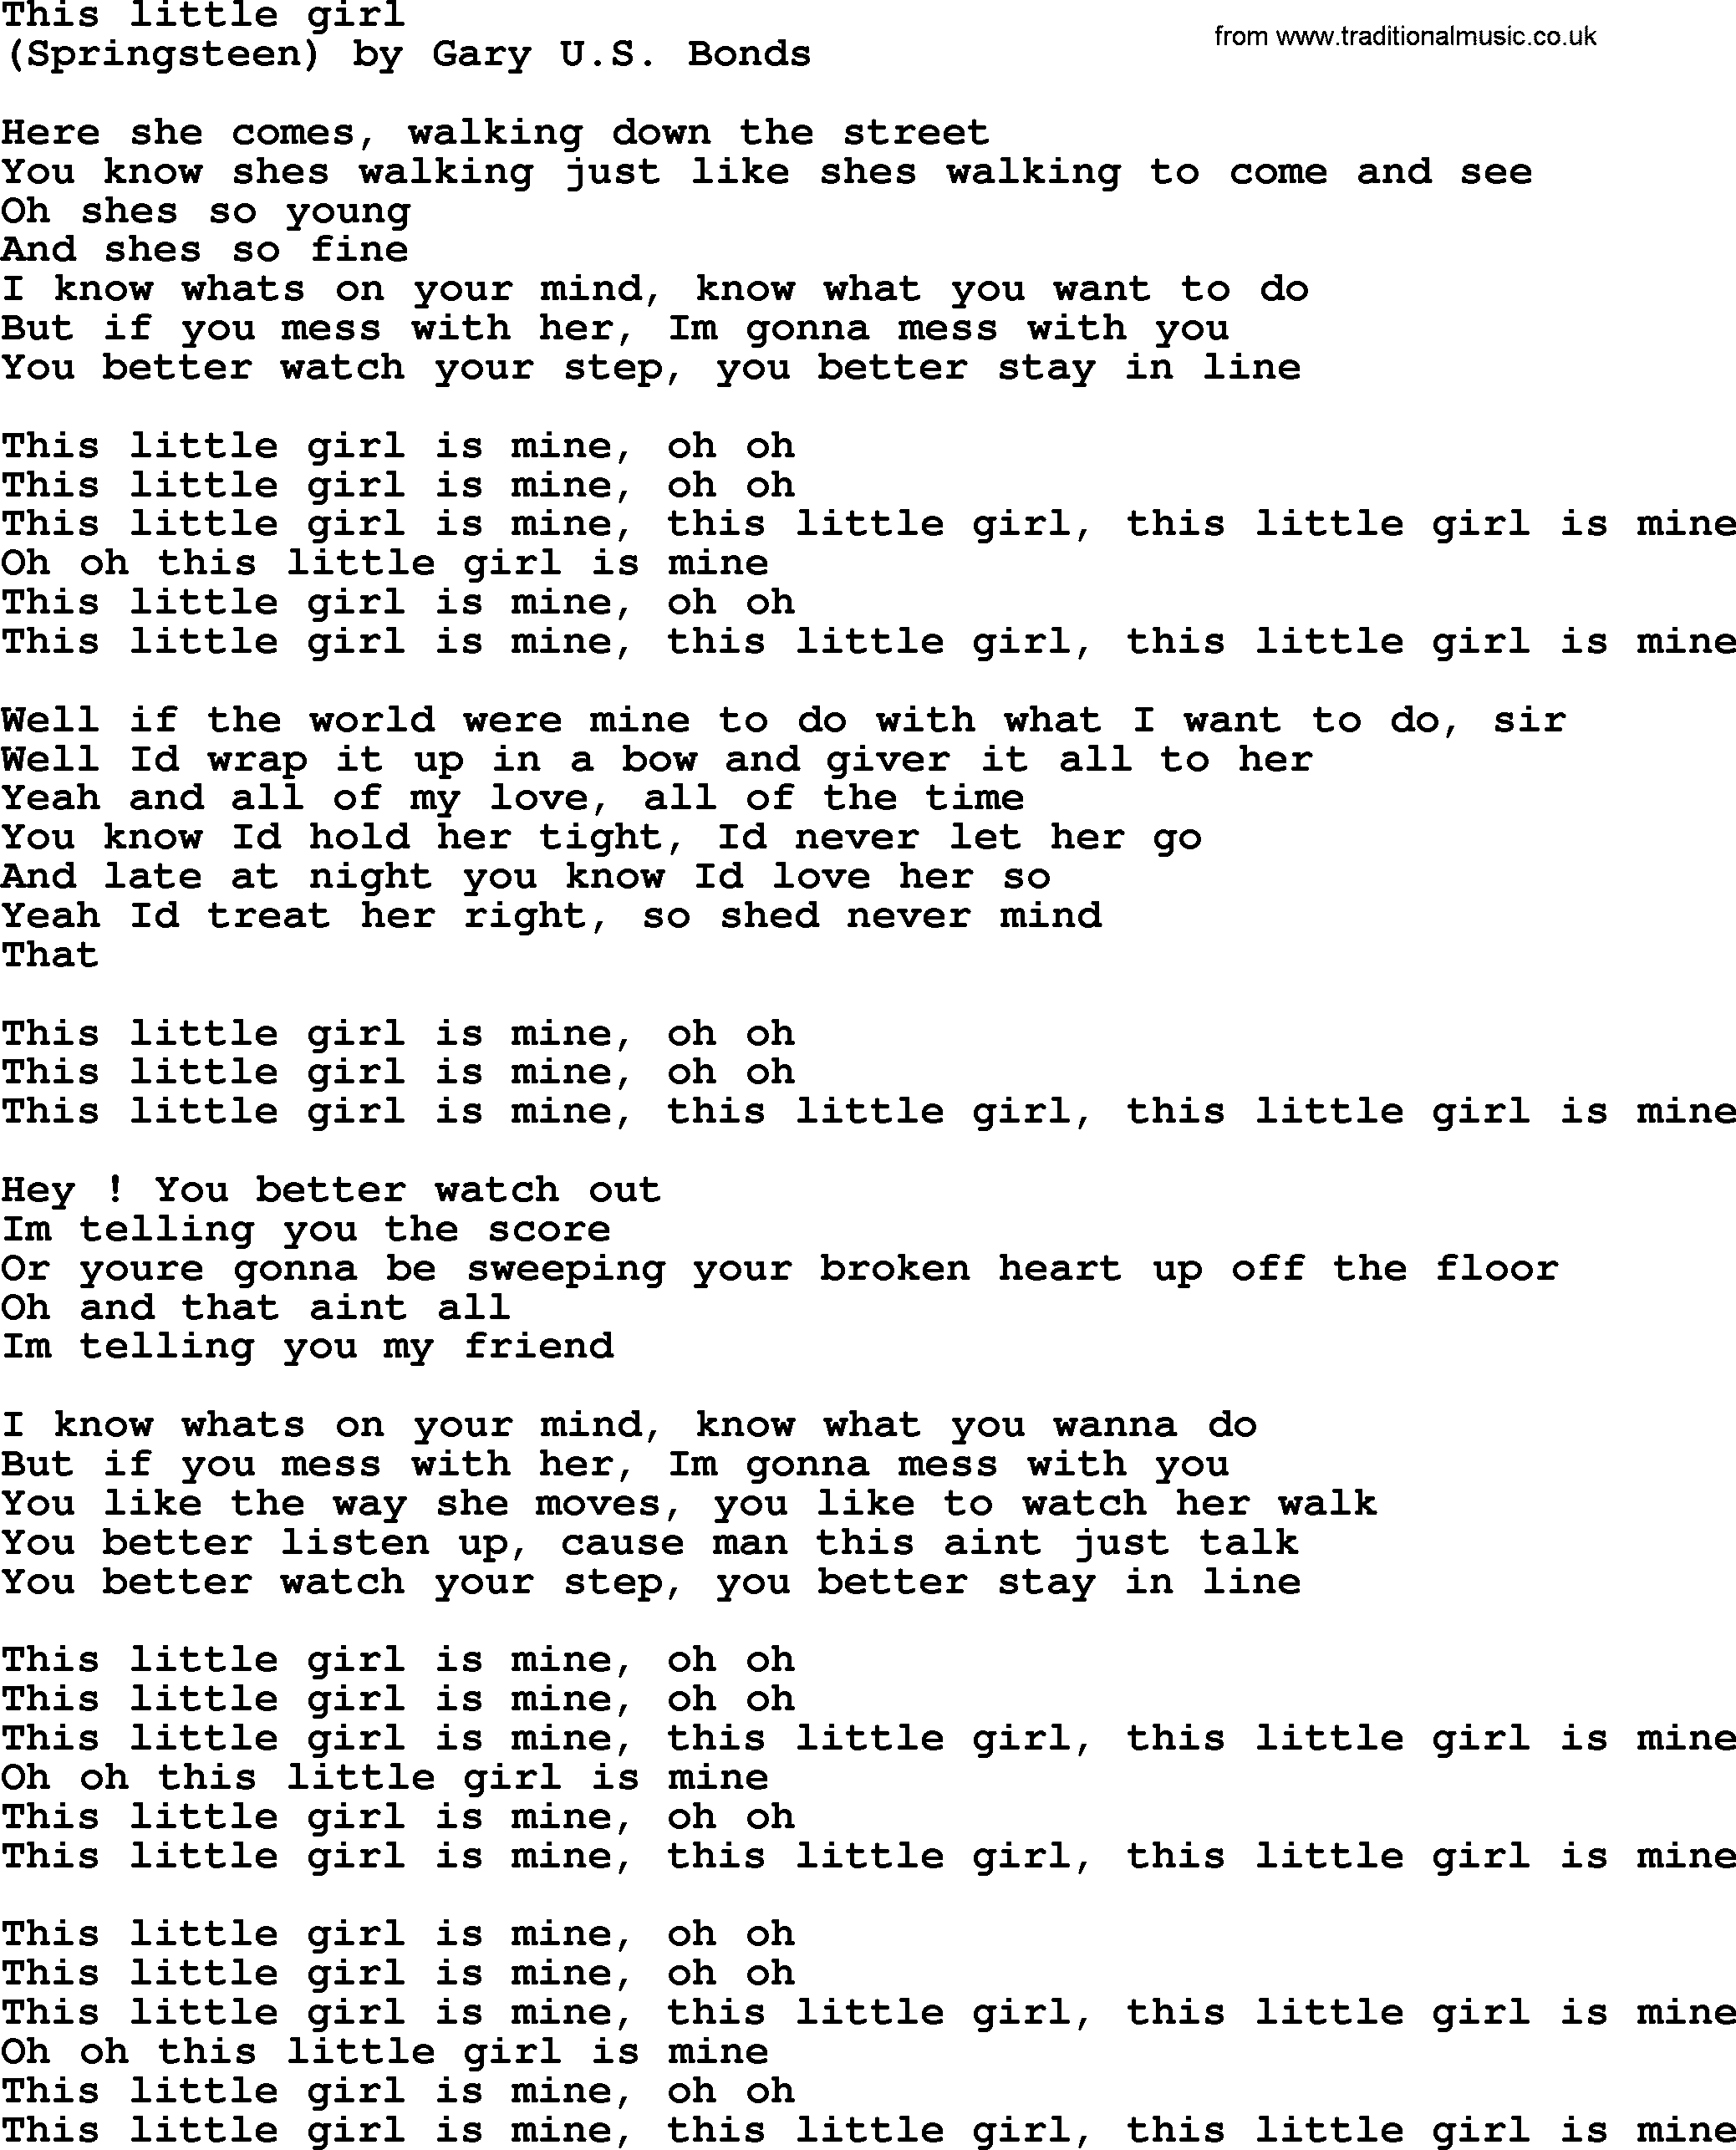 Bruce Springsteen song: This Little Girl lyrics